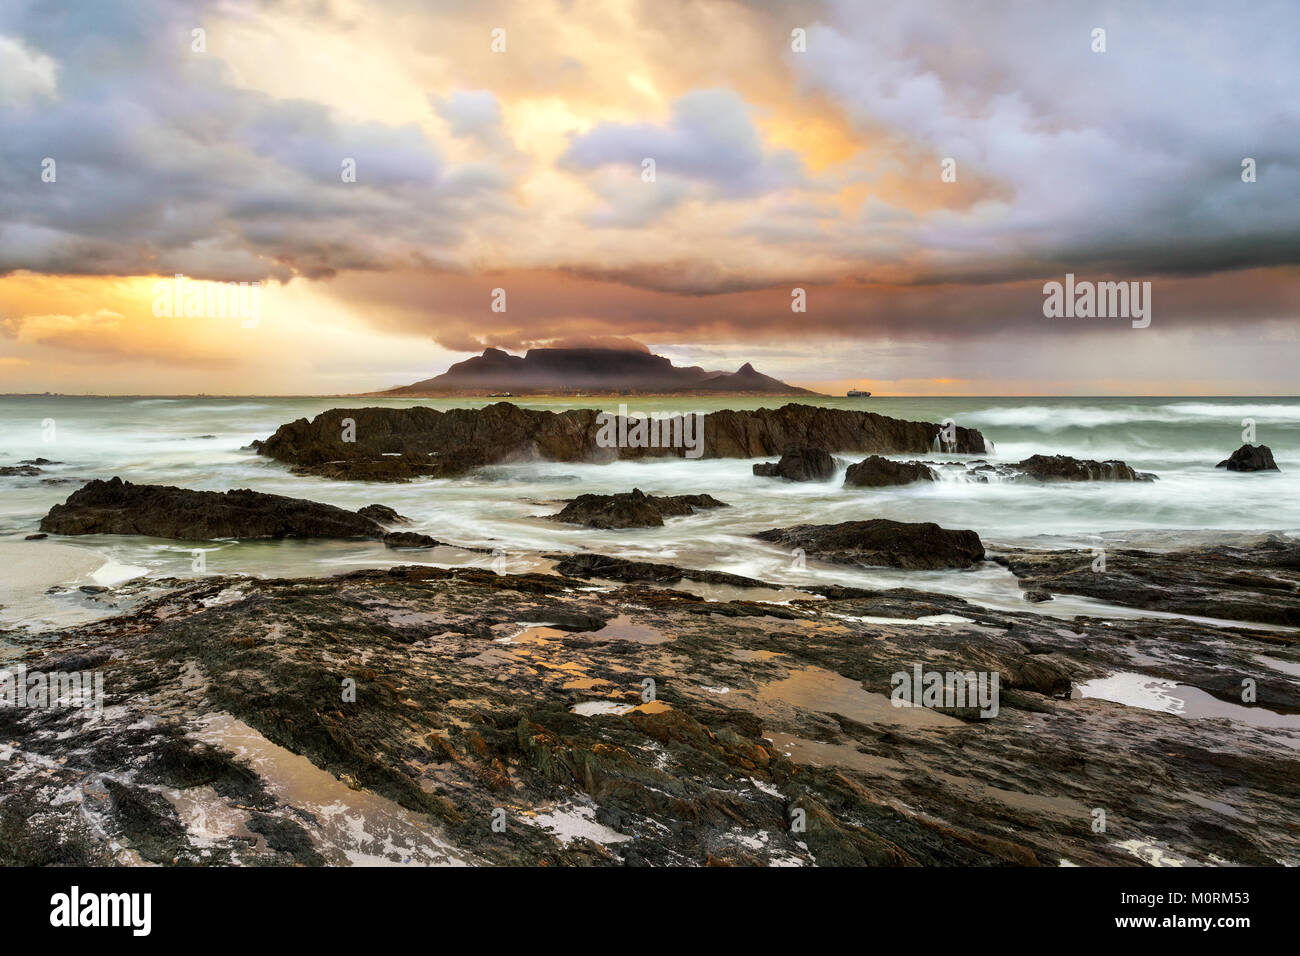 África, Sudáfrica, Western Cape, Ciudad del Cabo, Bloubergstrand, Table Mountain Foto de stock